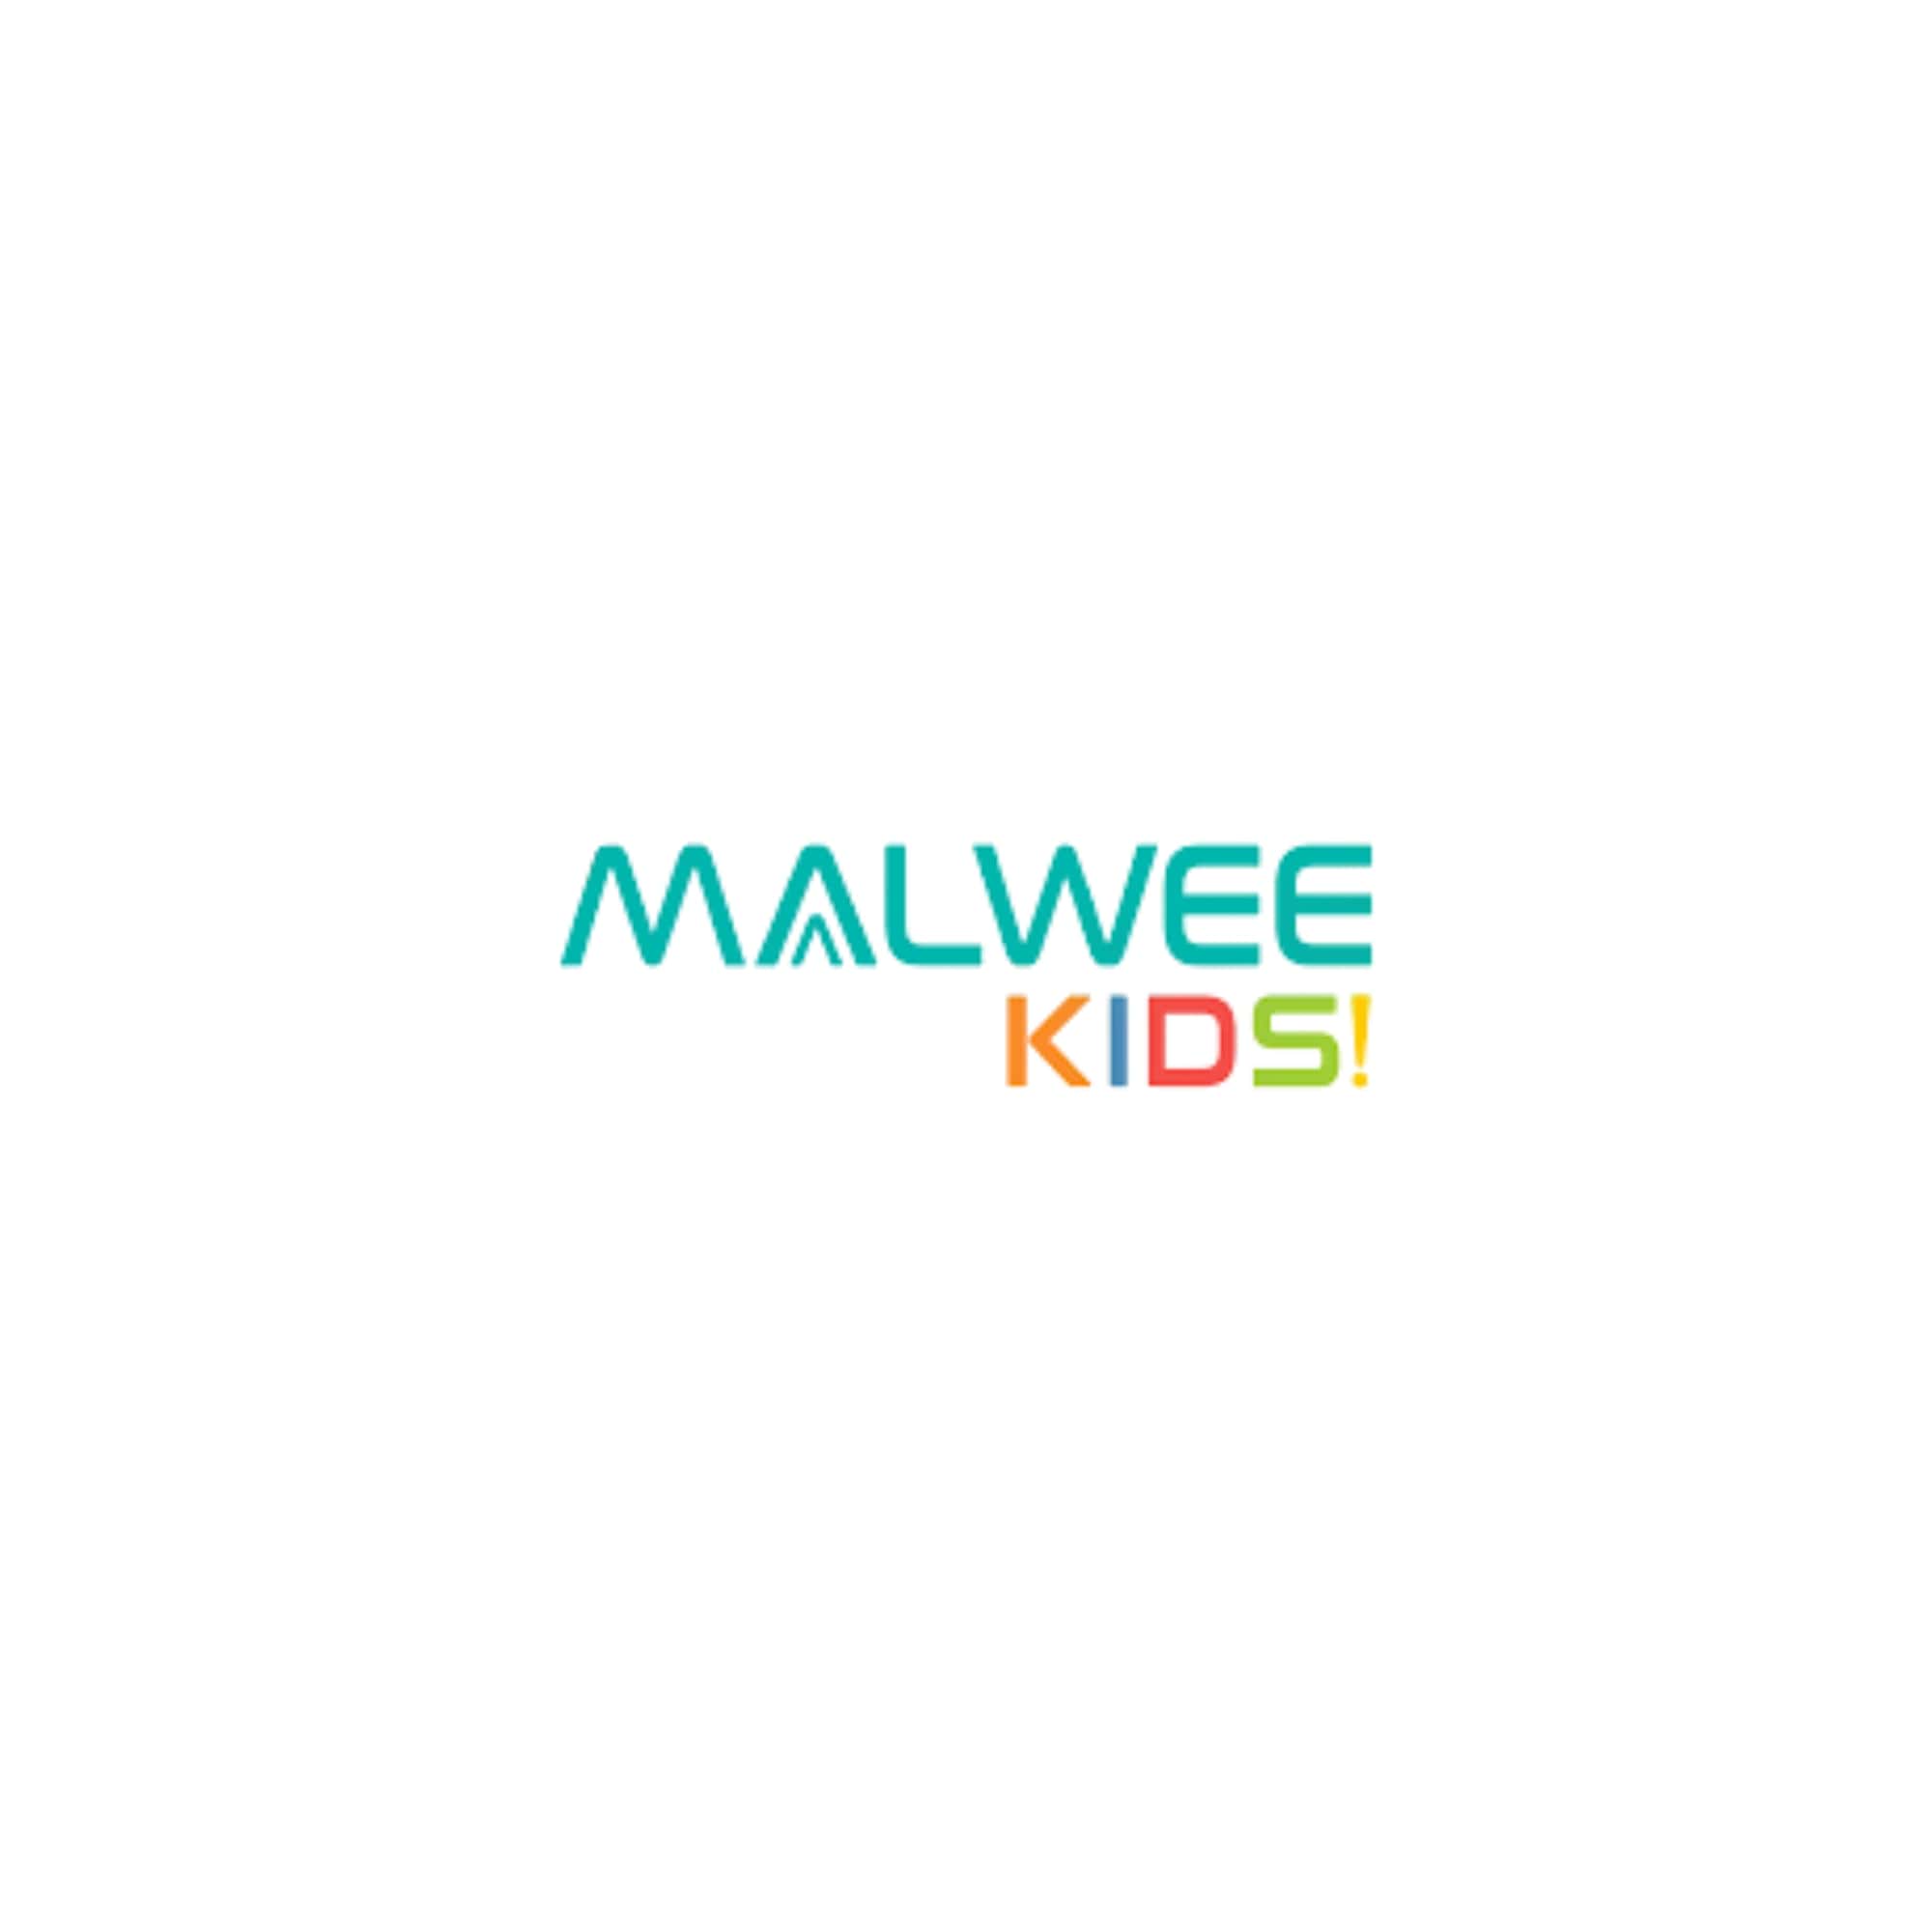 malwee